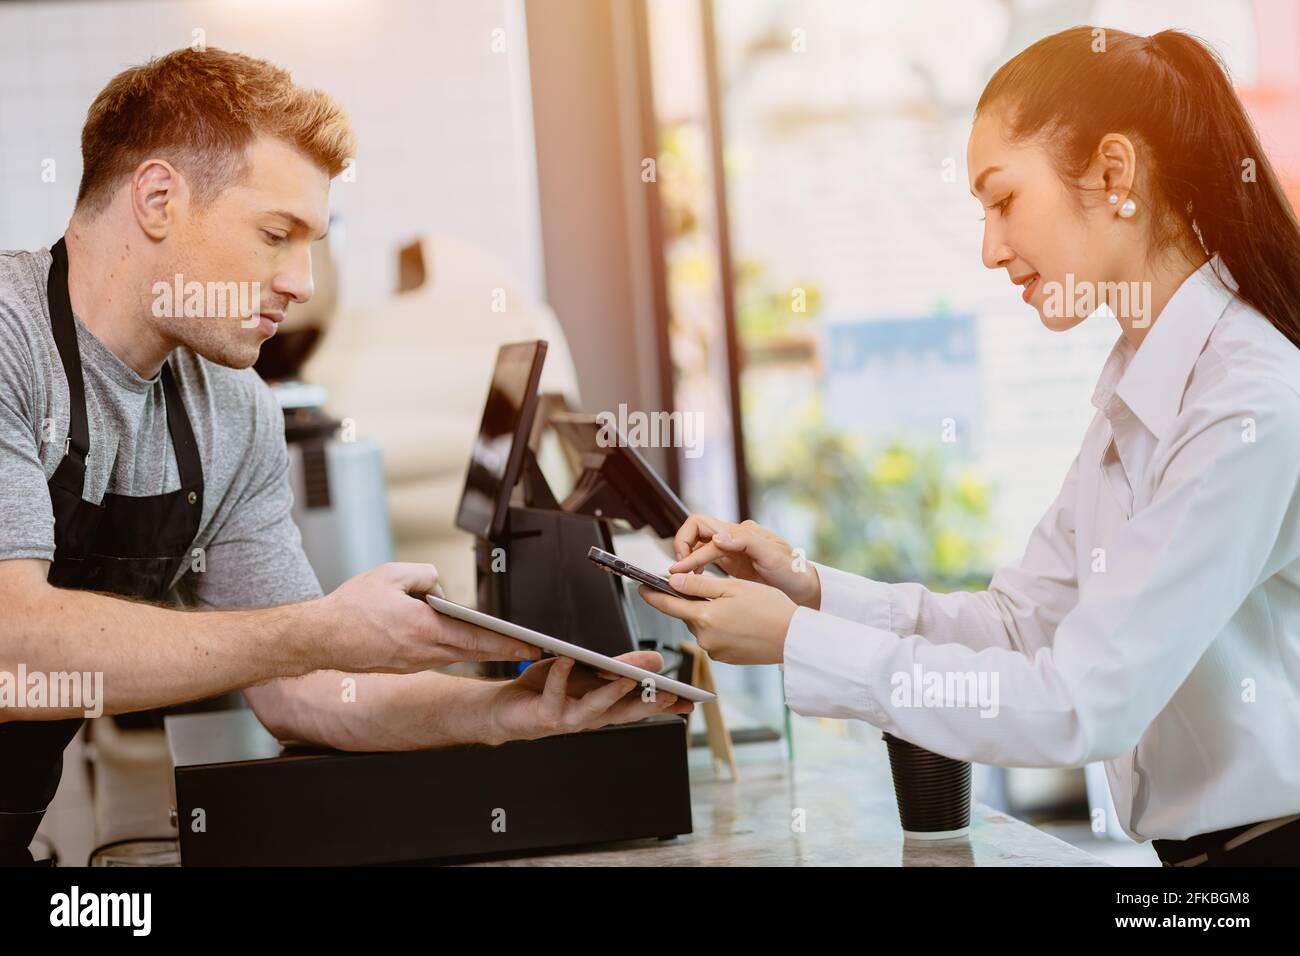 Le client du café qui utilise les services bancaires sur Internet mobile scanne le code de paiement QR pour la boisson de café du personnel de barista au comptoir, société sans espèces mode de vie moderne Banque D'Images